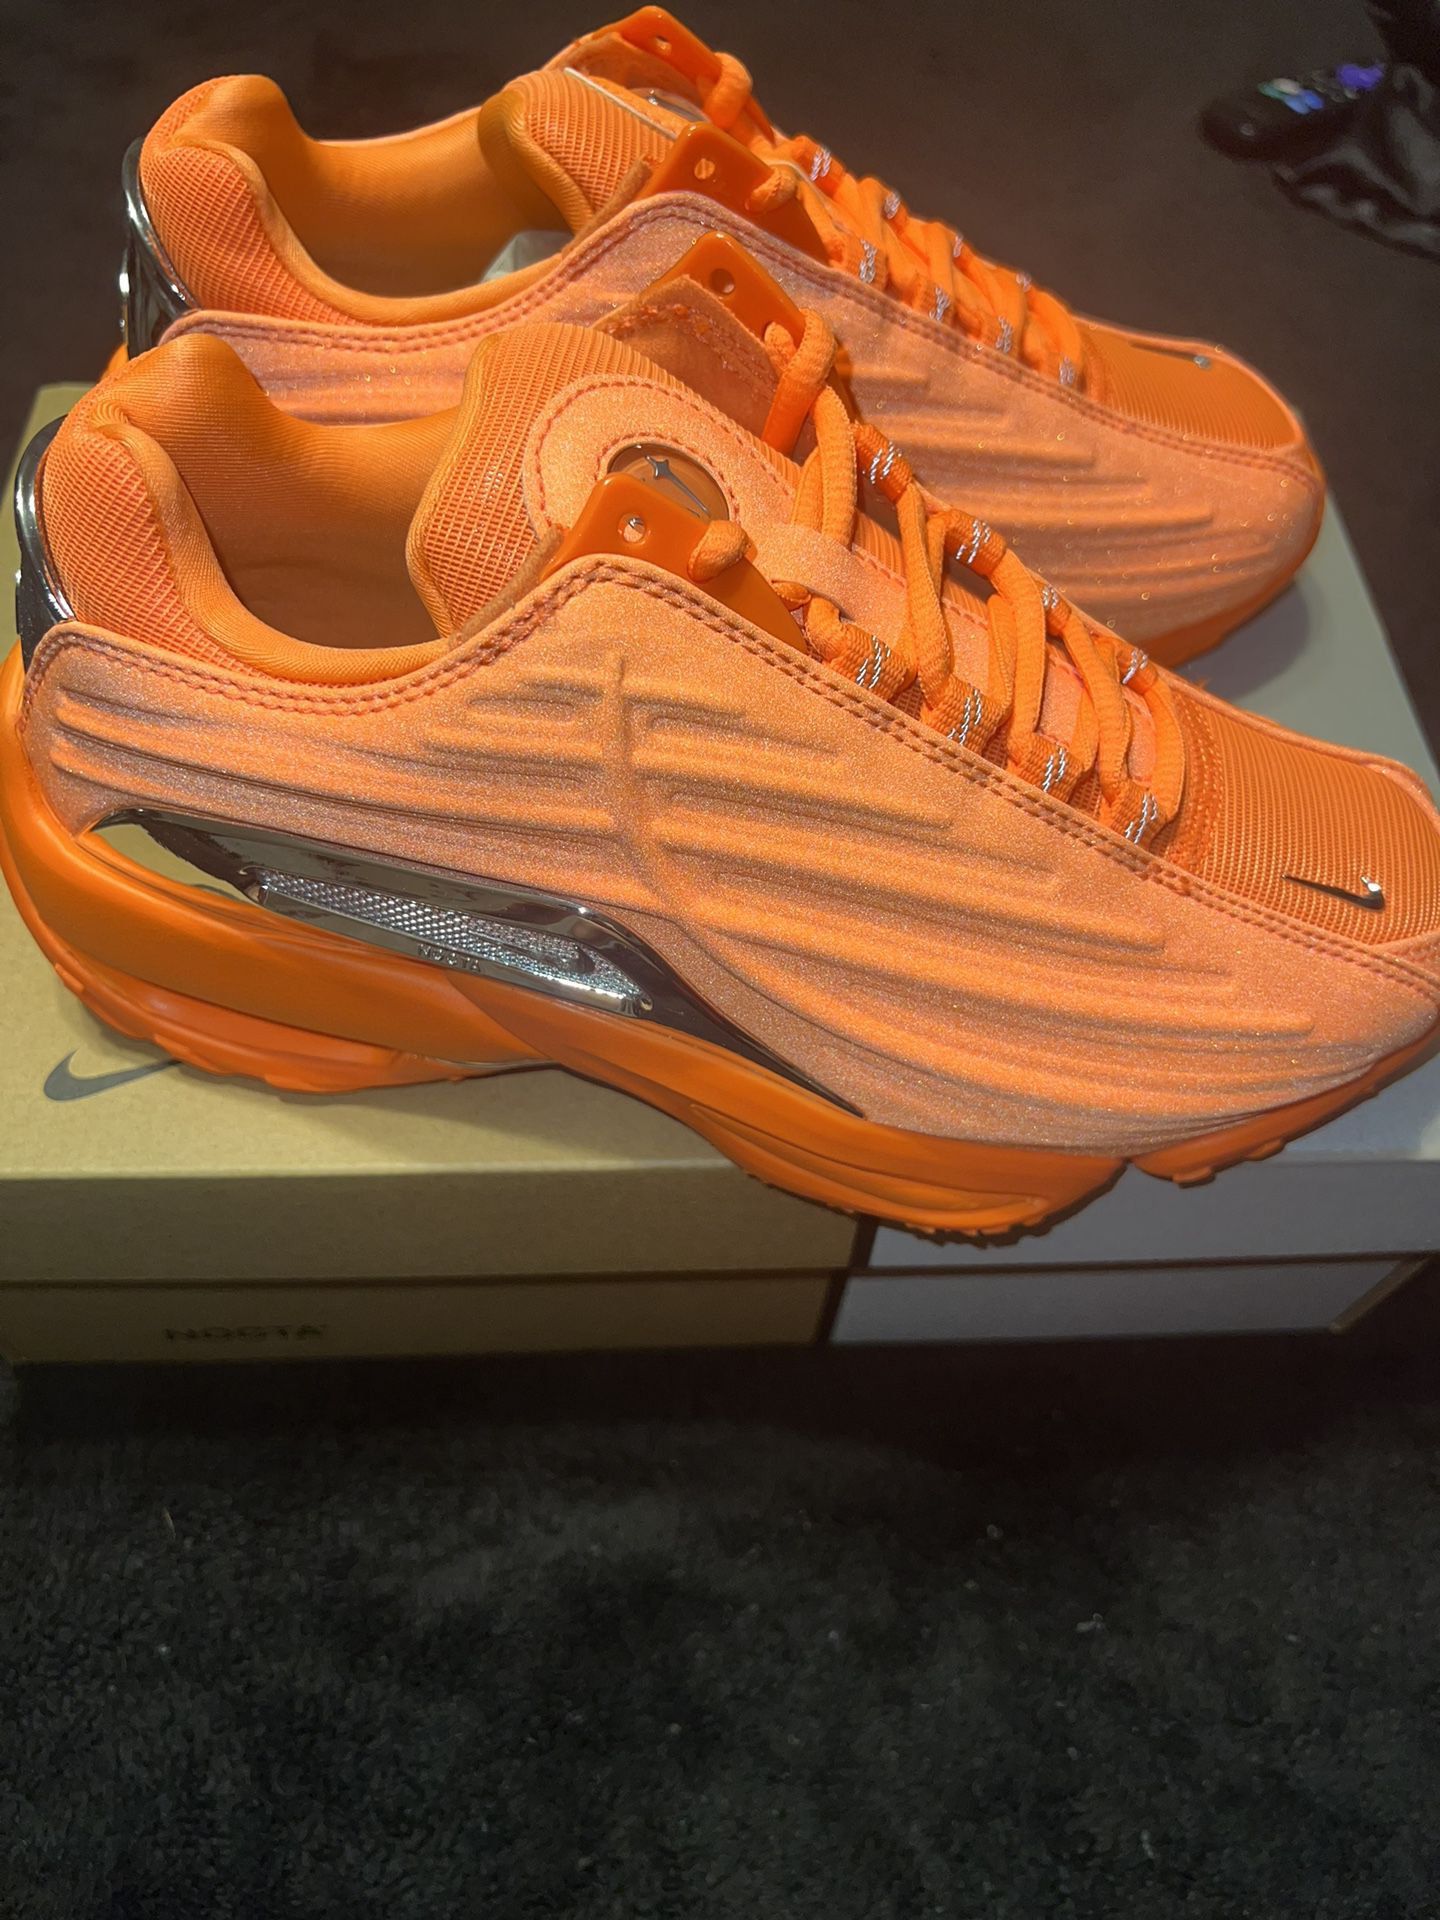 Drake X Nike Nocta Hot Step 2 Total Orange Size 5.5